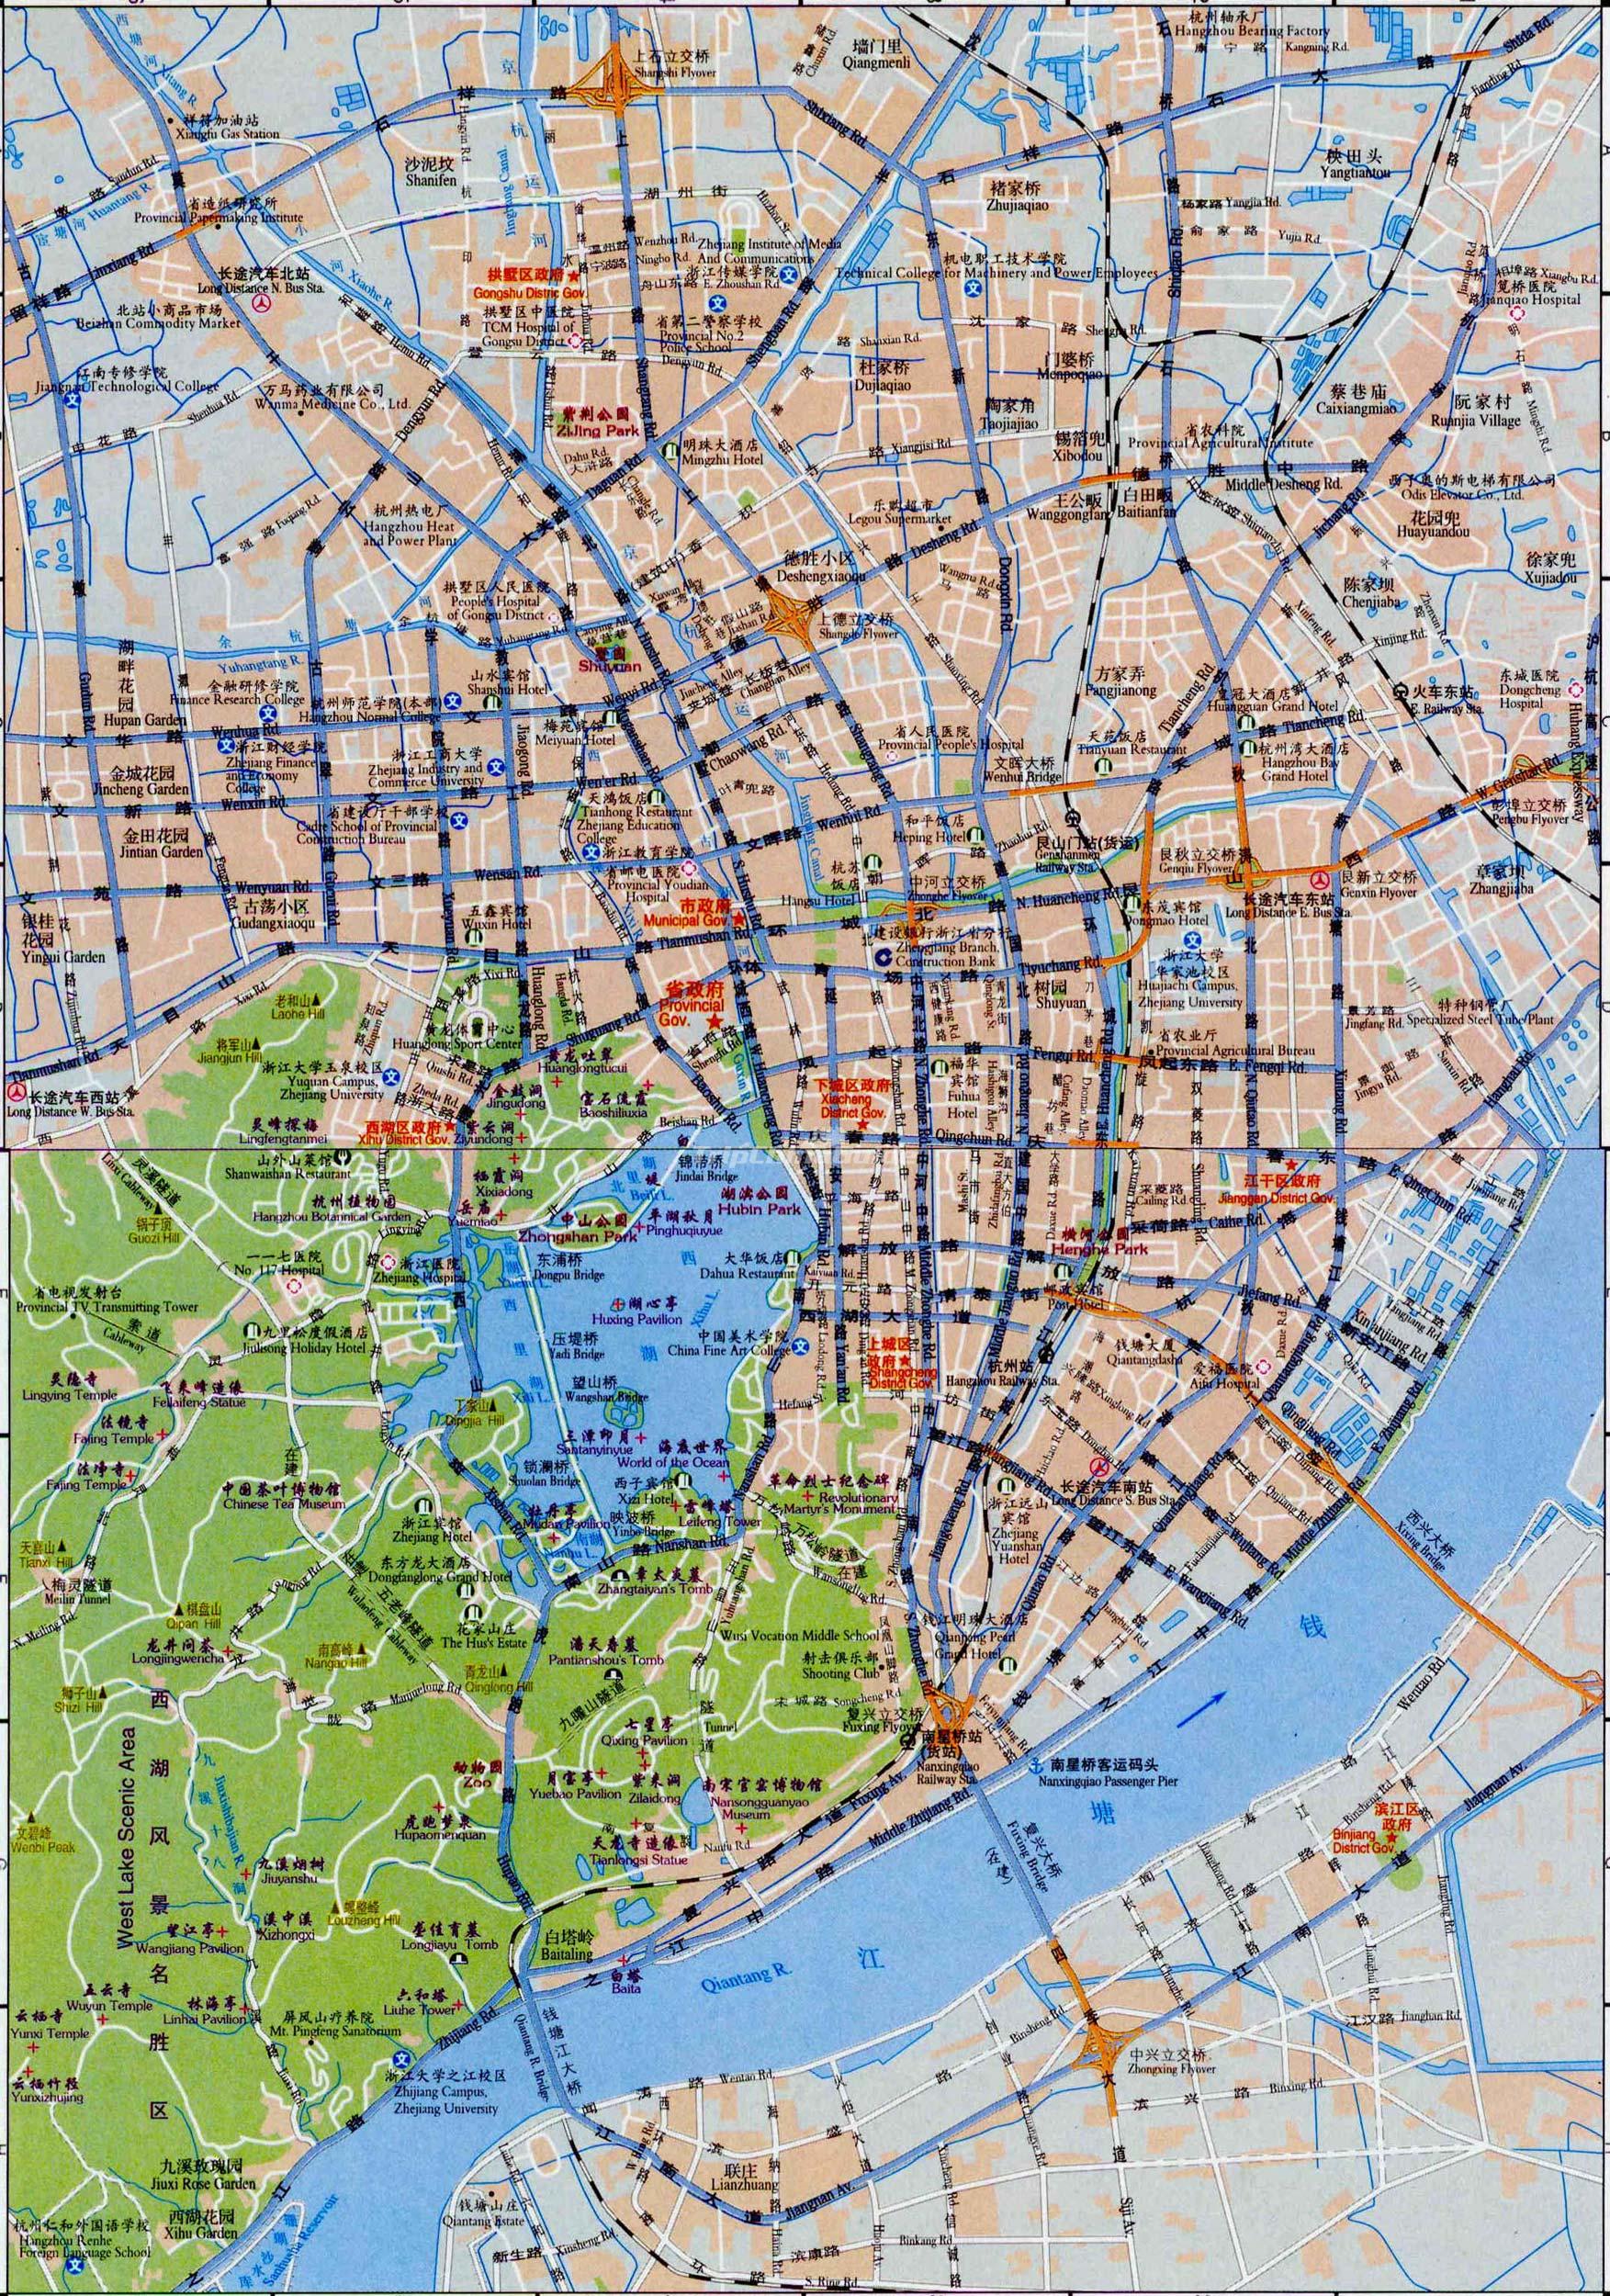 Plano centro de Hangzhou - Zhejiang - China - Asia